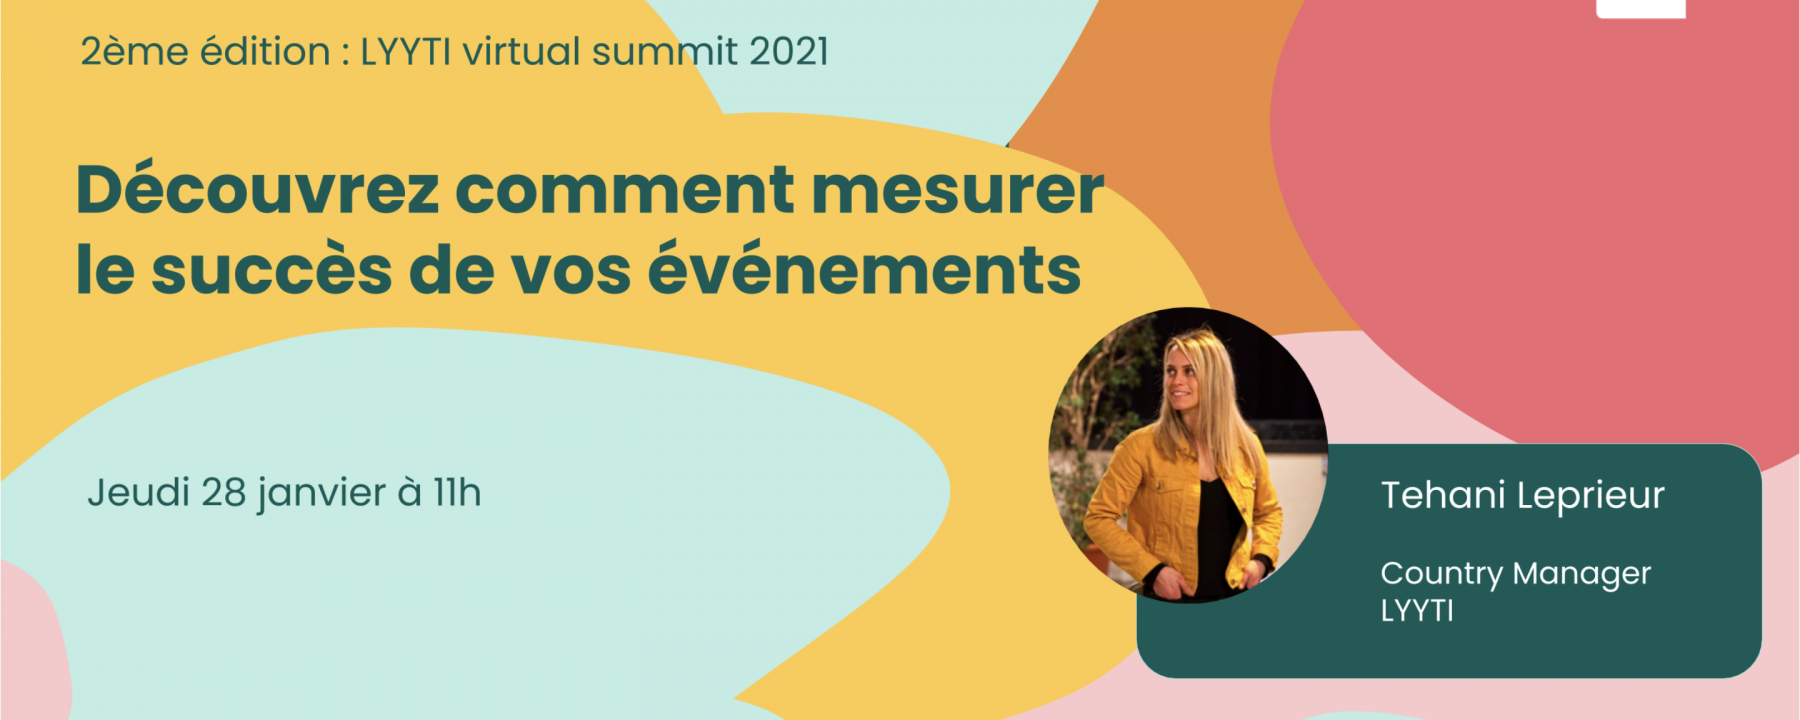 Lyyti Virtual Summit 2021 France 2e édition, le 28 janvier à 11h